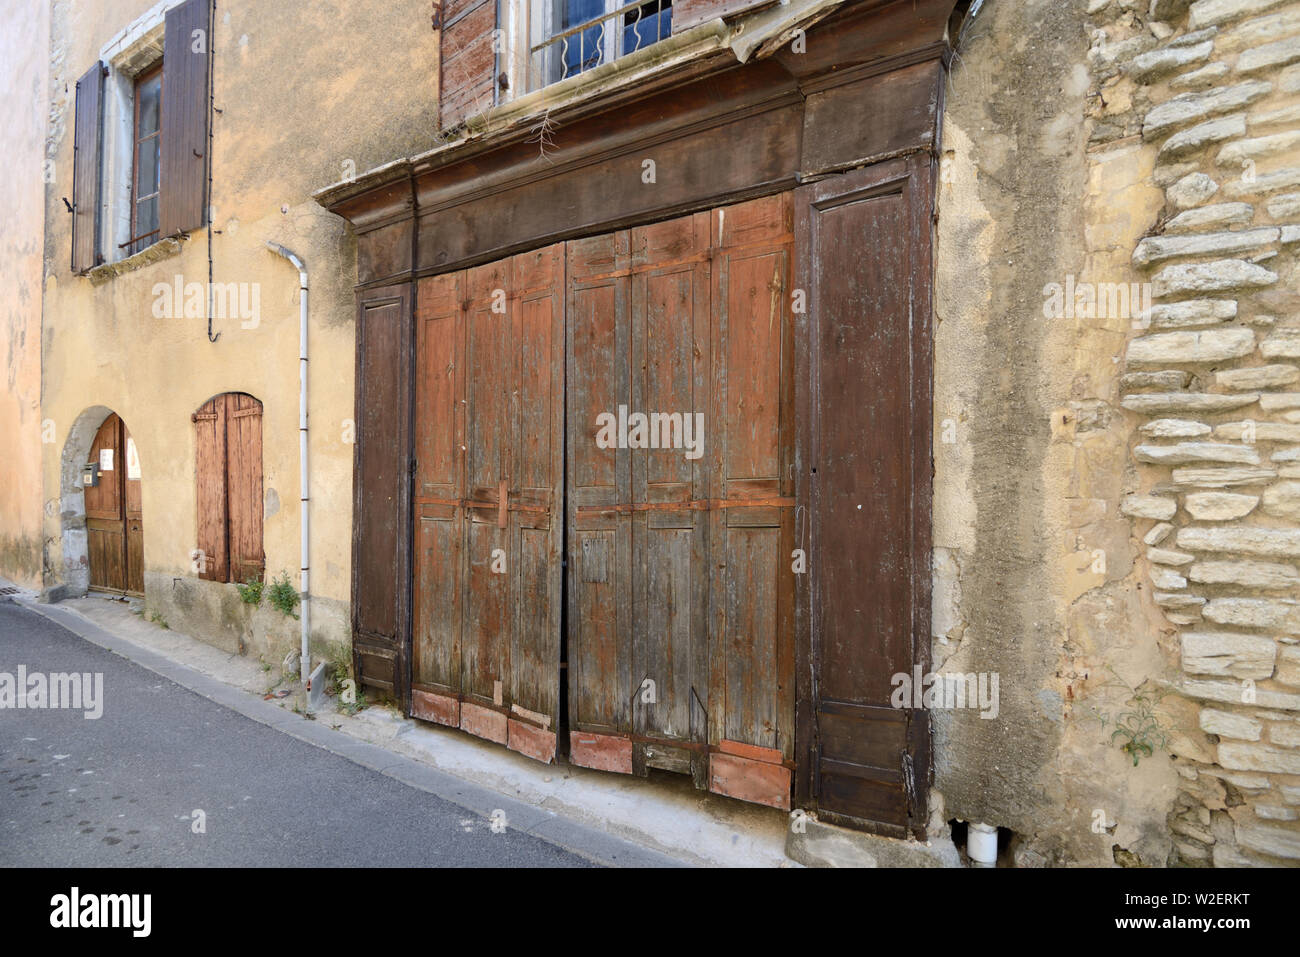 Traditionelle alte hölzerne Shop Vorne & geschlossene oder offene Dorfladen, der Kiosk an der Ecke oder Store Goult Luberon Provence Frankreich Stockfoto